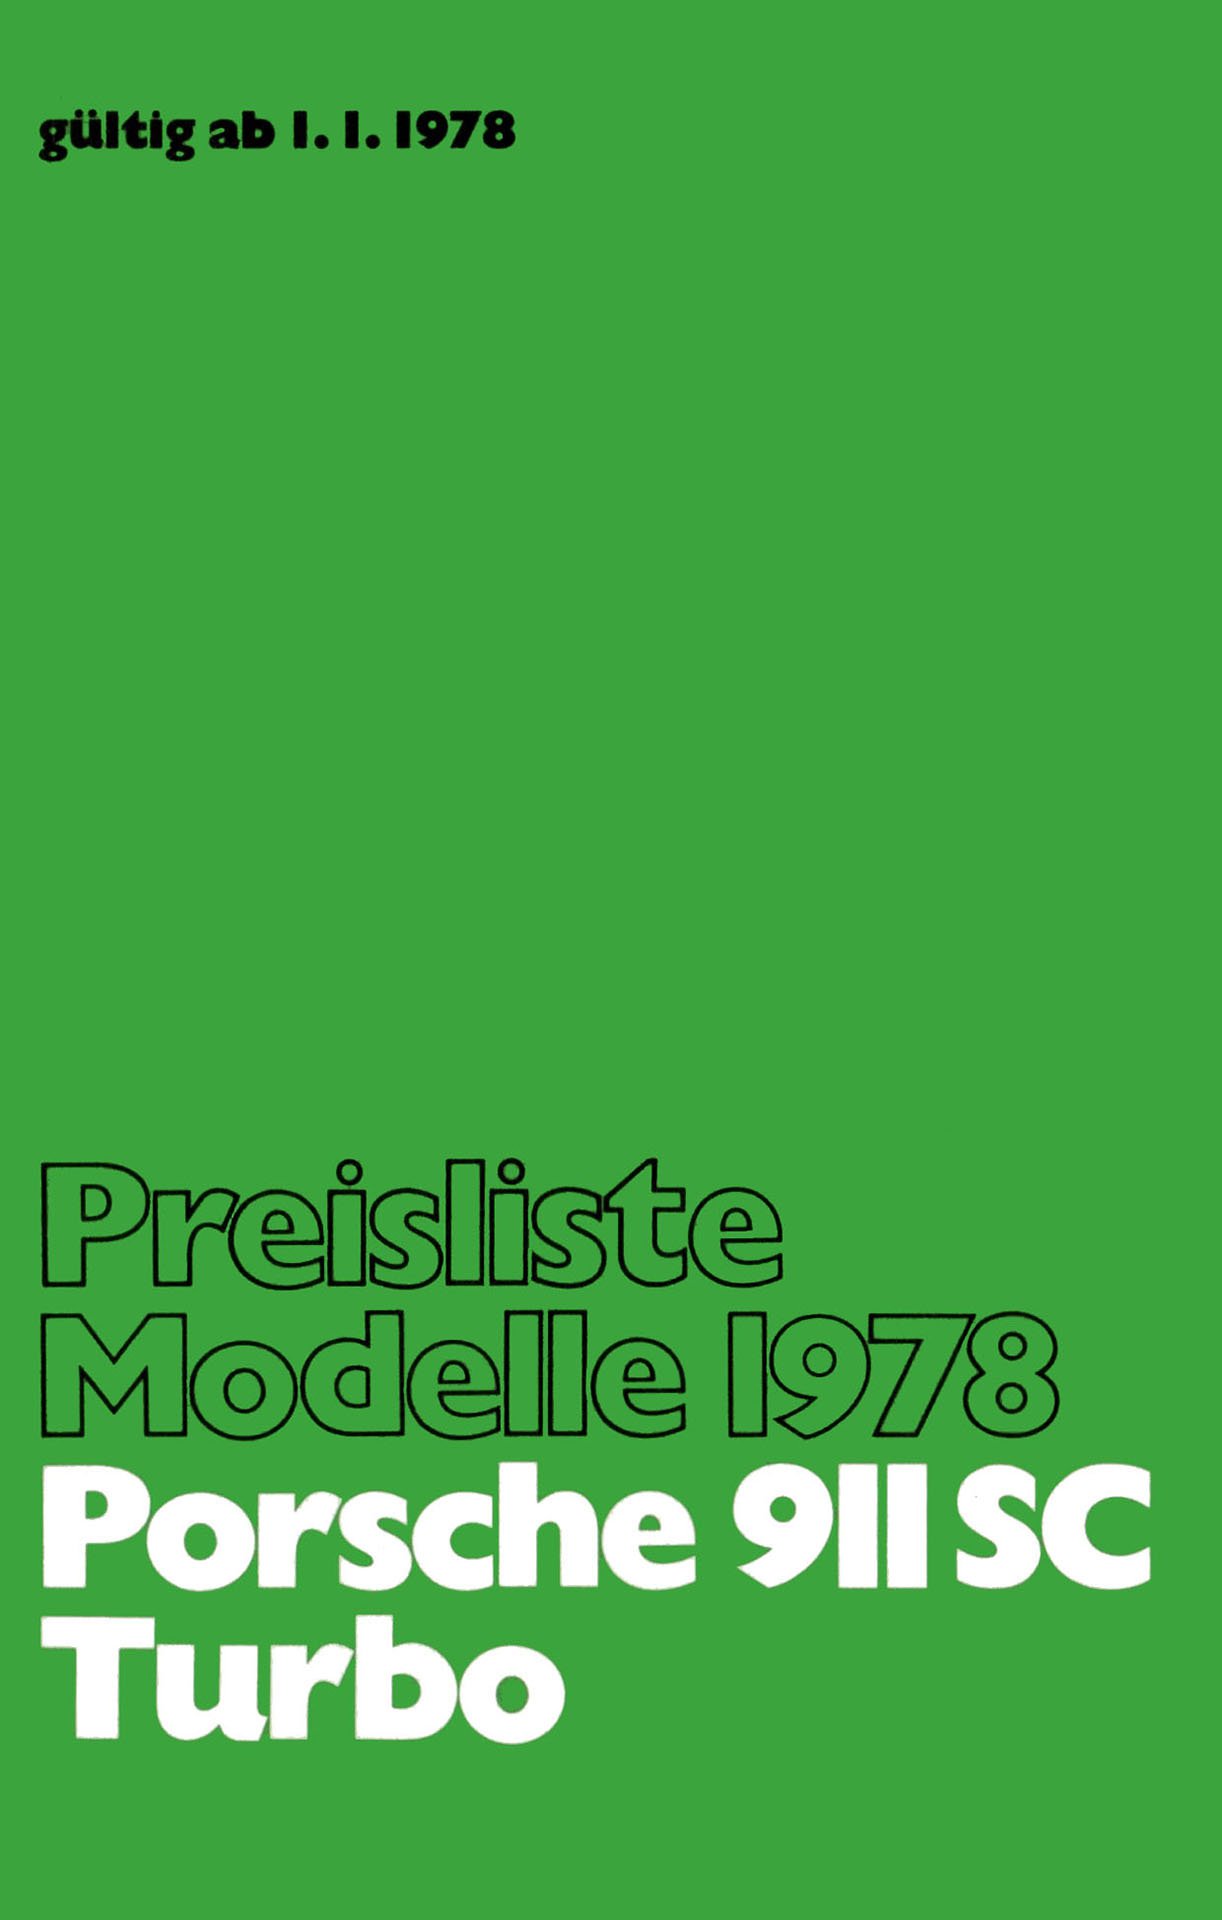 1978-01-01_-_Porsche_911_SC_-_911_Turbo_-_Preisliste.jpg